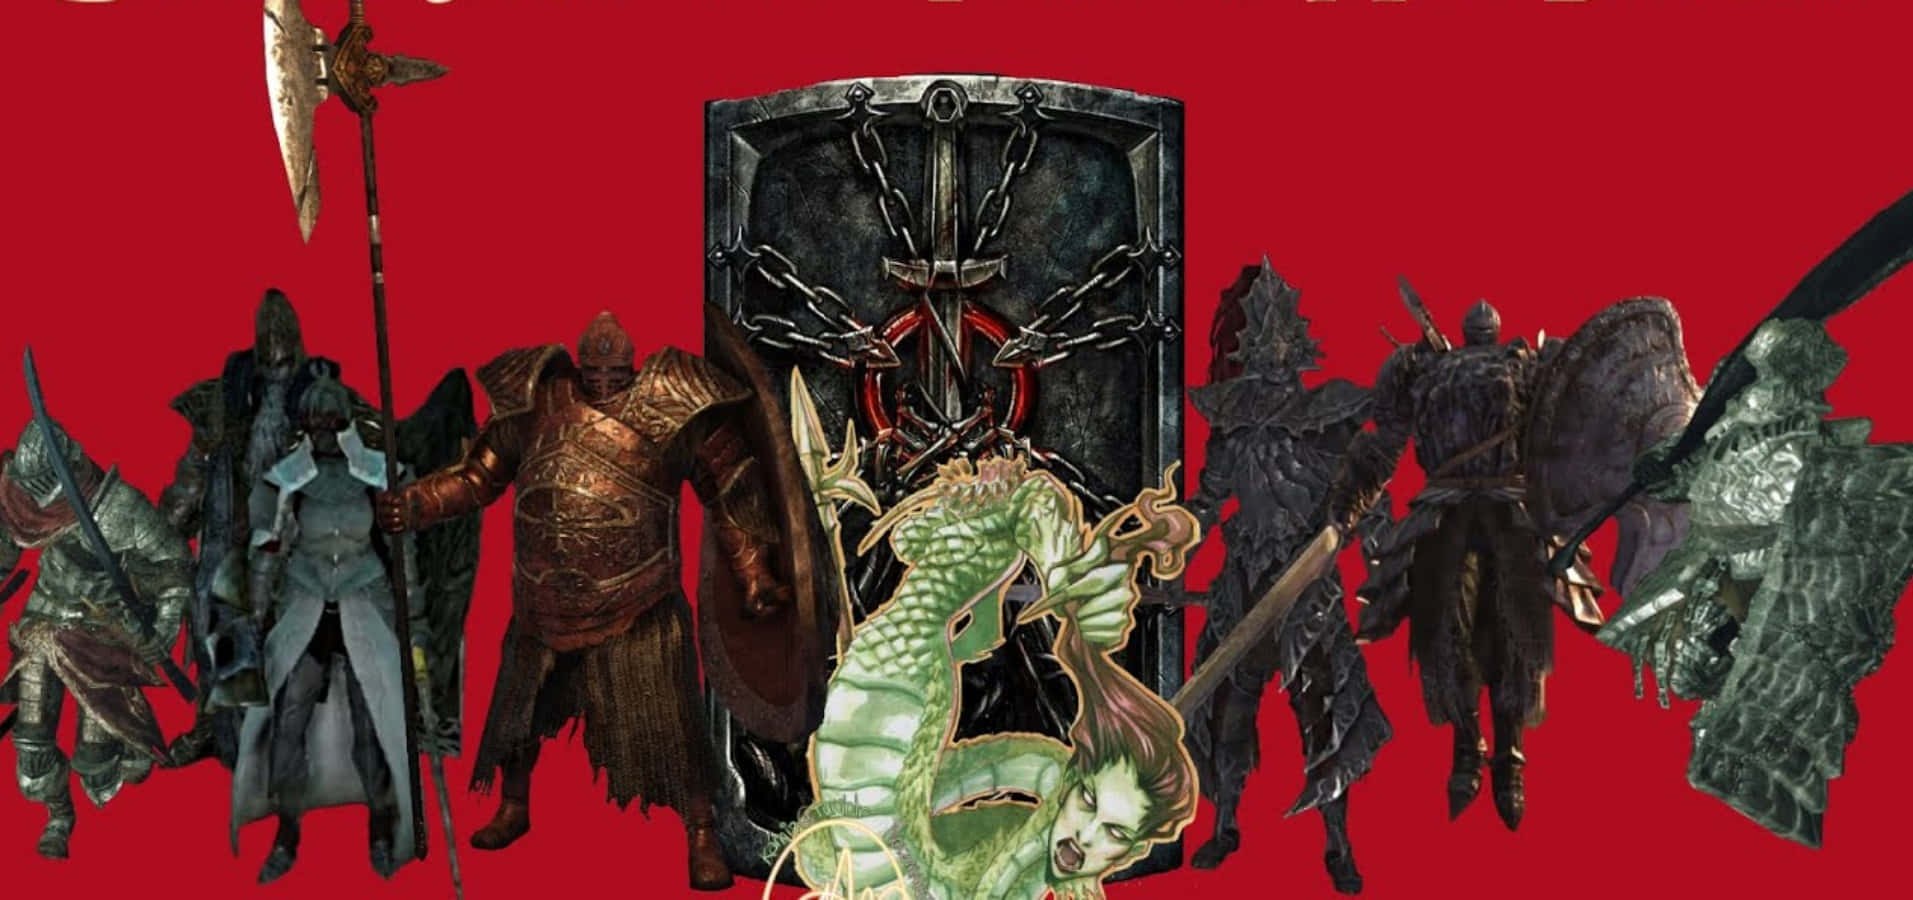 Fierce Dark Souls Bosses Battle Wallpaper